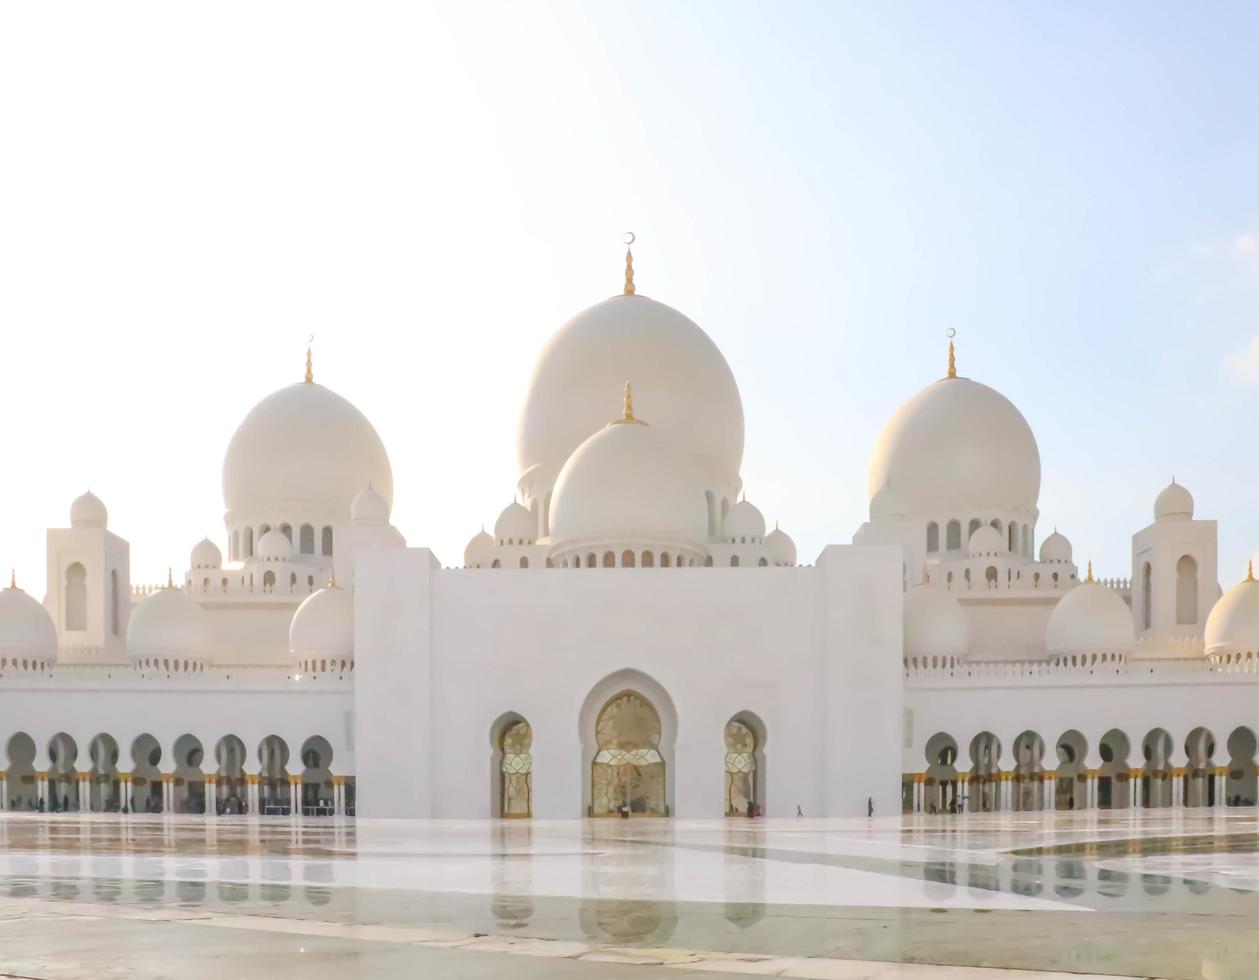 abu dhabi, emiratos árabes unidos 27 de diciembre de 2018 mezquita sheikh zayed. emiratos árabes unidos, oriente medio. sitio famoso. foto